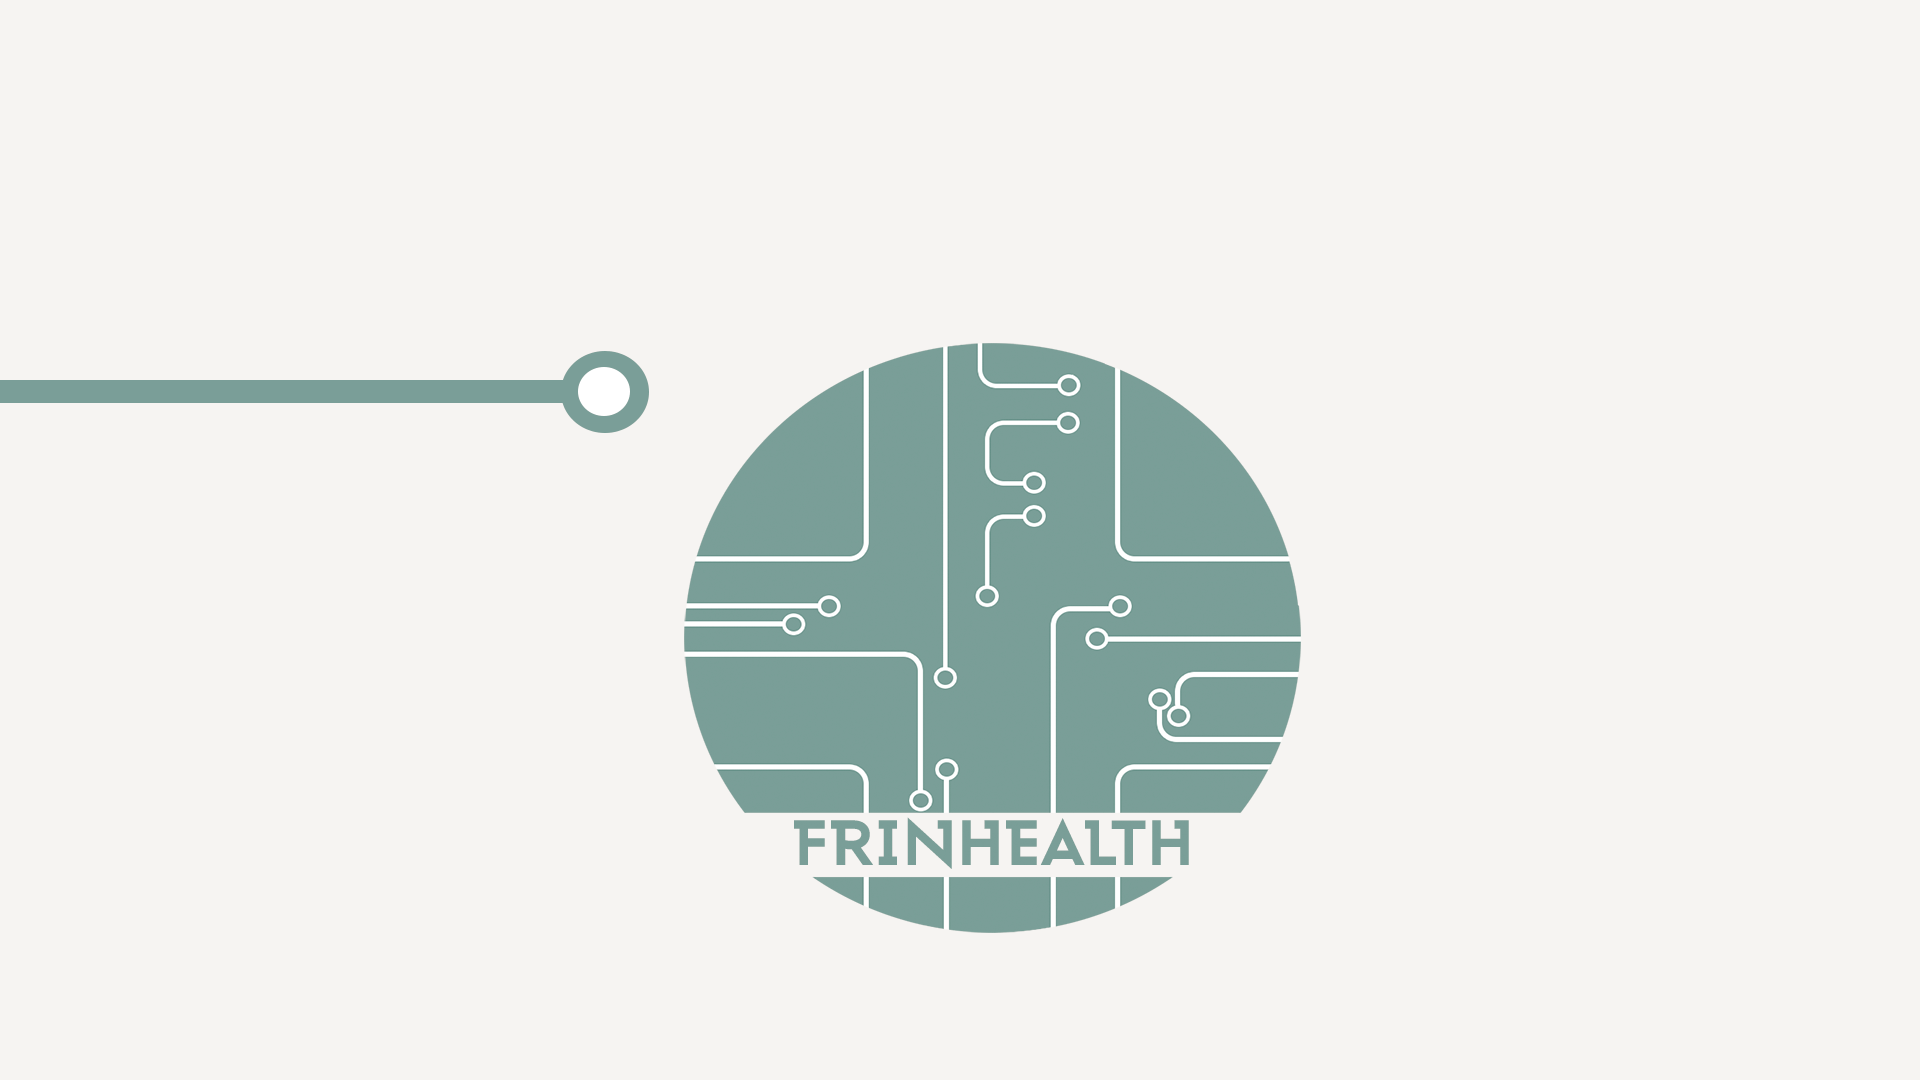 Frinhealth